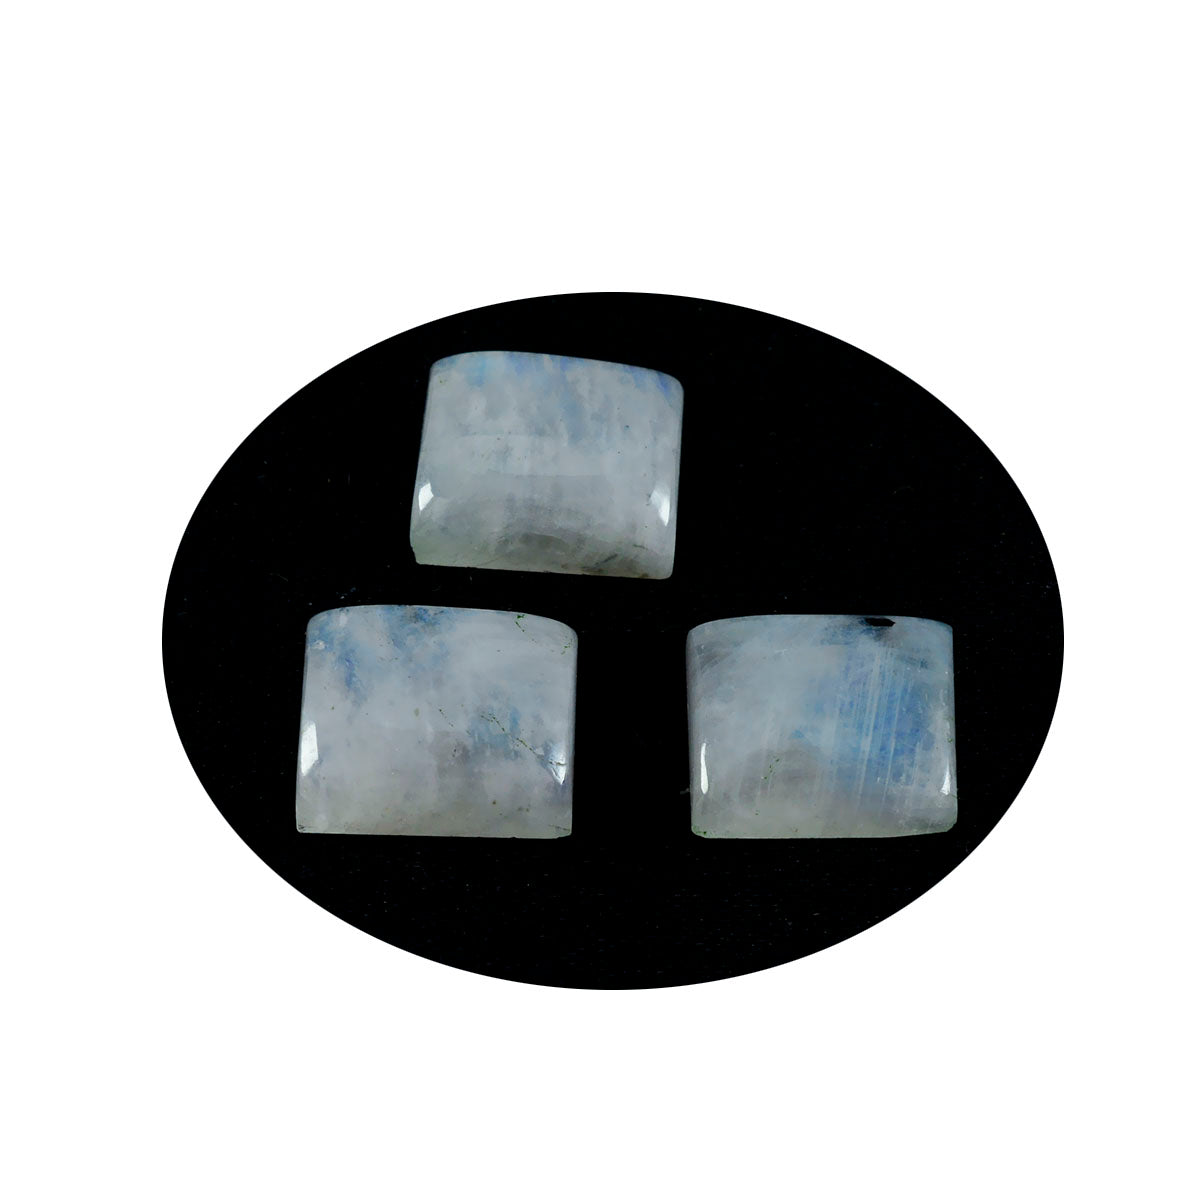 Riyogems 1 Stück weißer Regenbogen-Mondstein-Cabochon, 10 x 12 mm, achteckige Form, erstaunliche Qualität, loser Edelstein